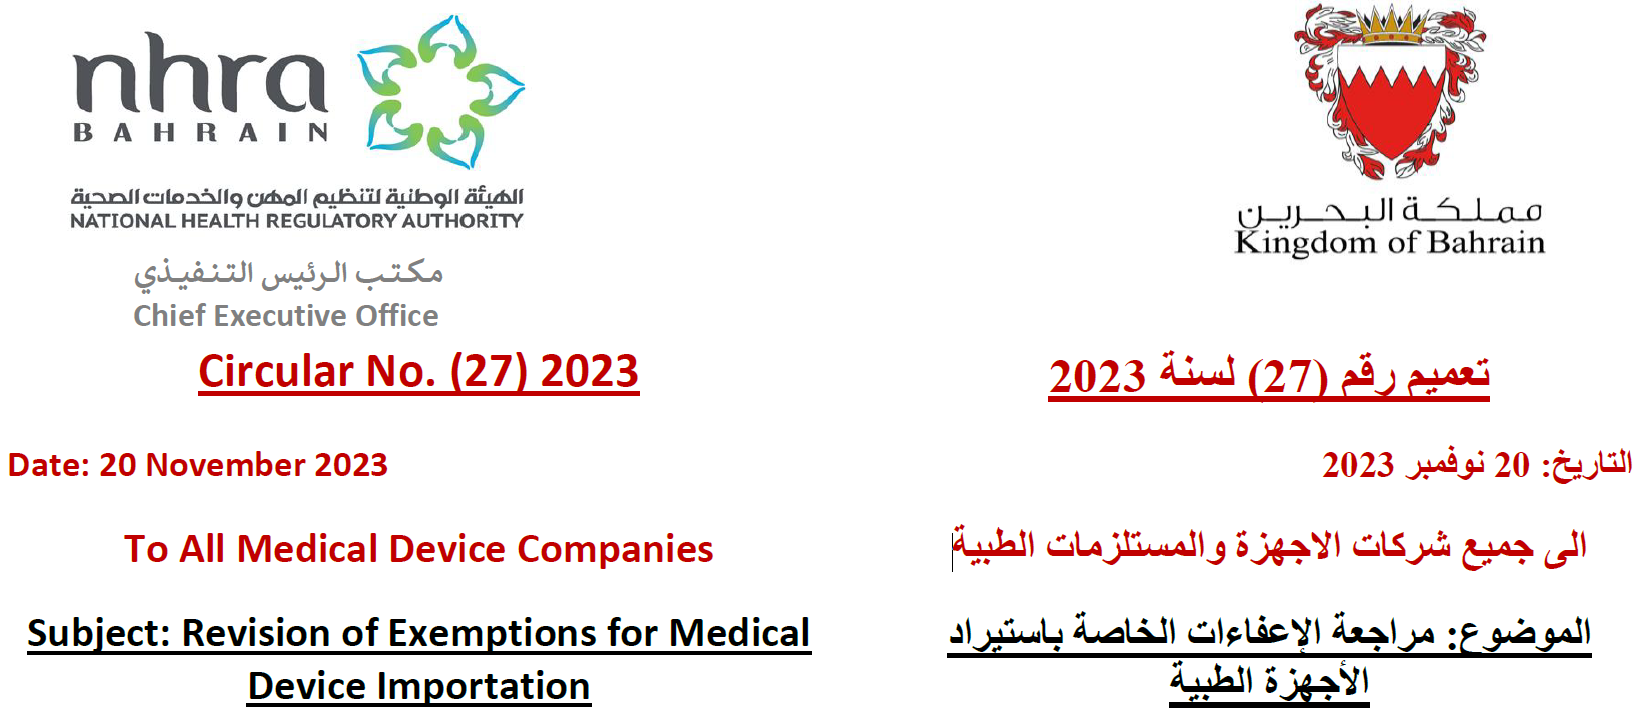 التعميم رقم (27) لسنة 2023: إلى جميع شركات الأجهزة والمستلزمات الطبيةمراجعة الإعفاءات الخاصة باستيراد الأجهزة الطبية